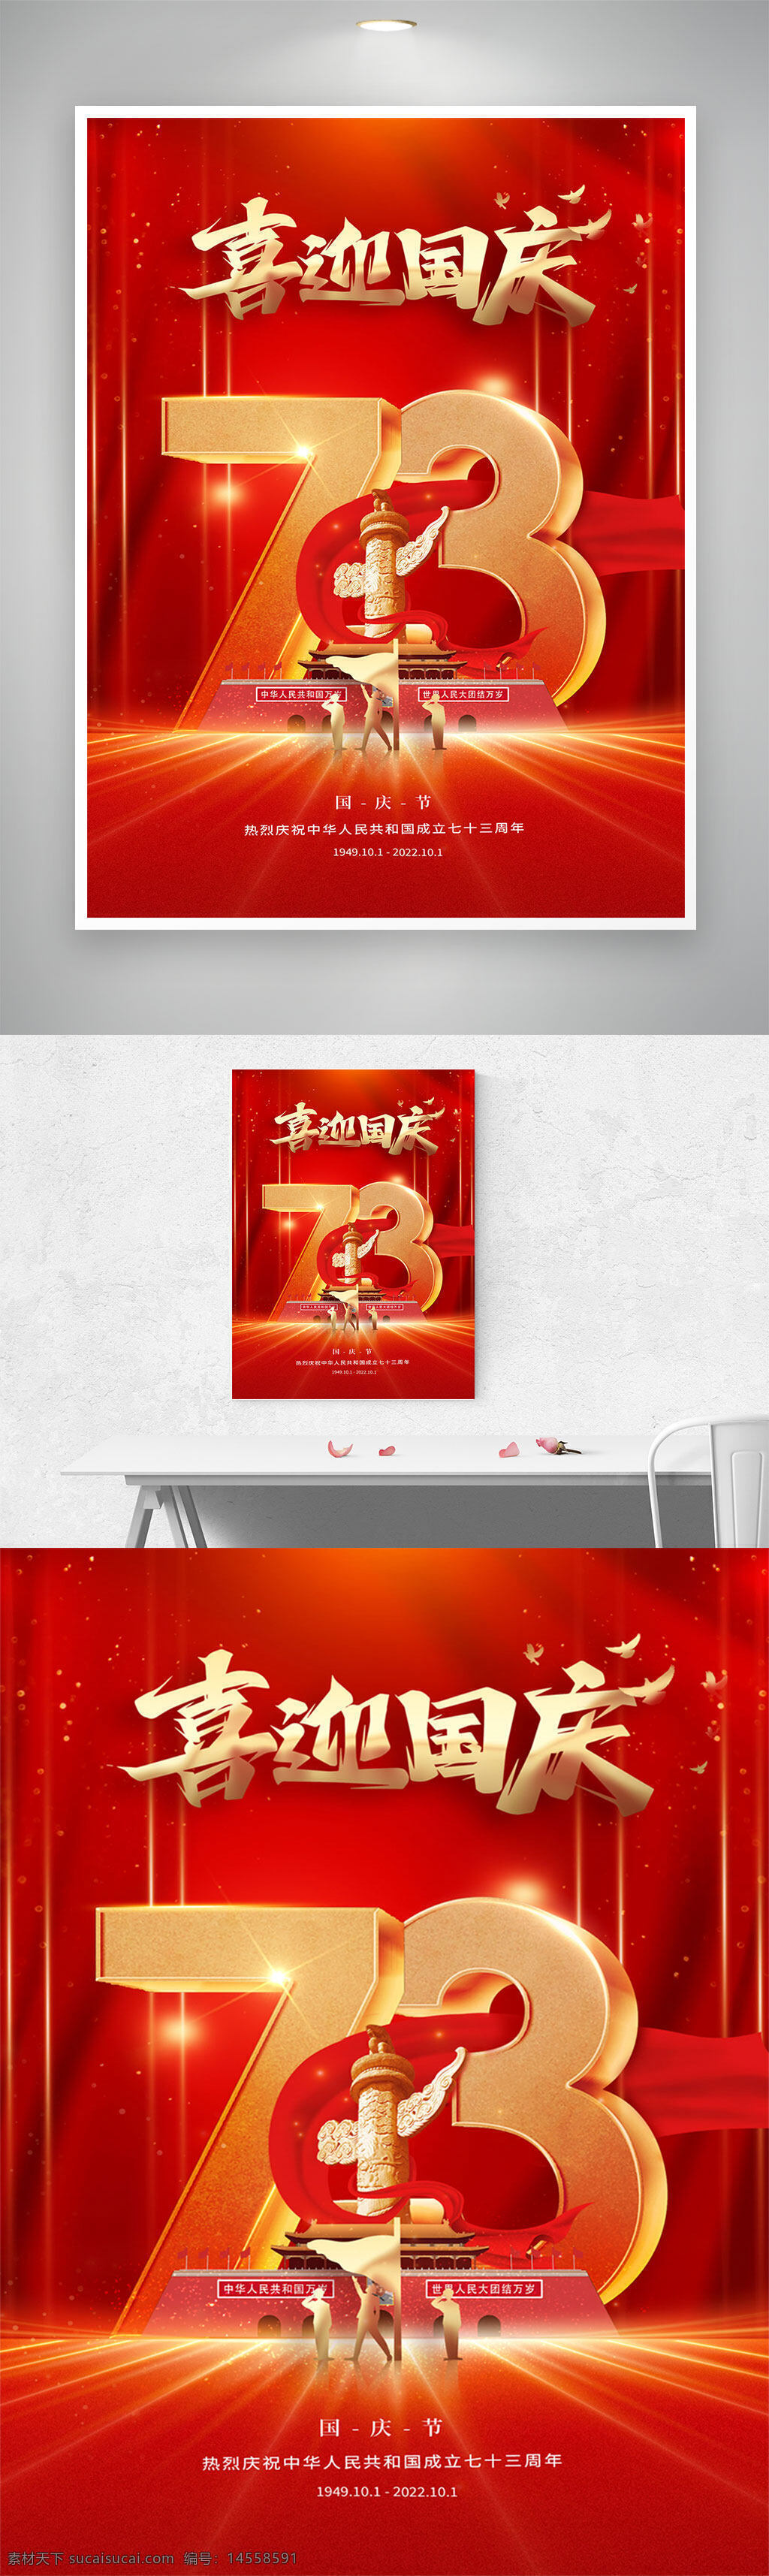 国庆节海报 大气红色展板 73周年海报 喜迎国庆展板